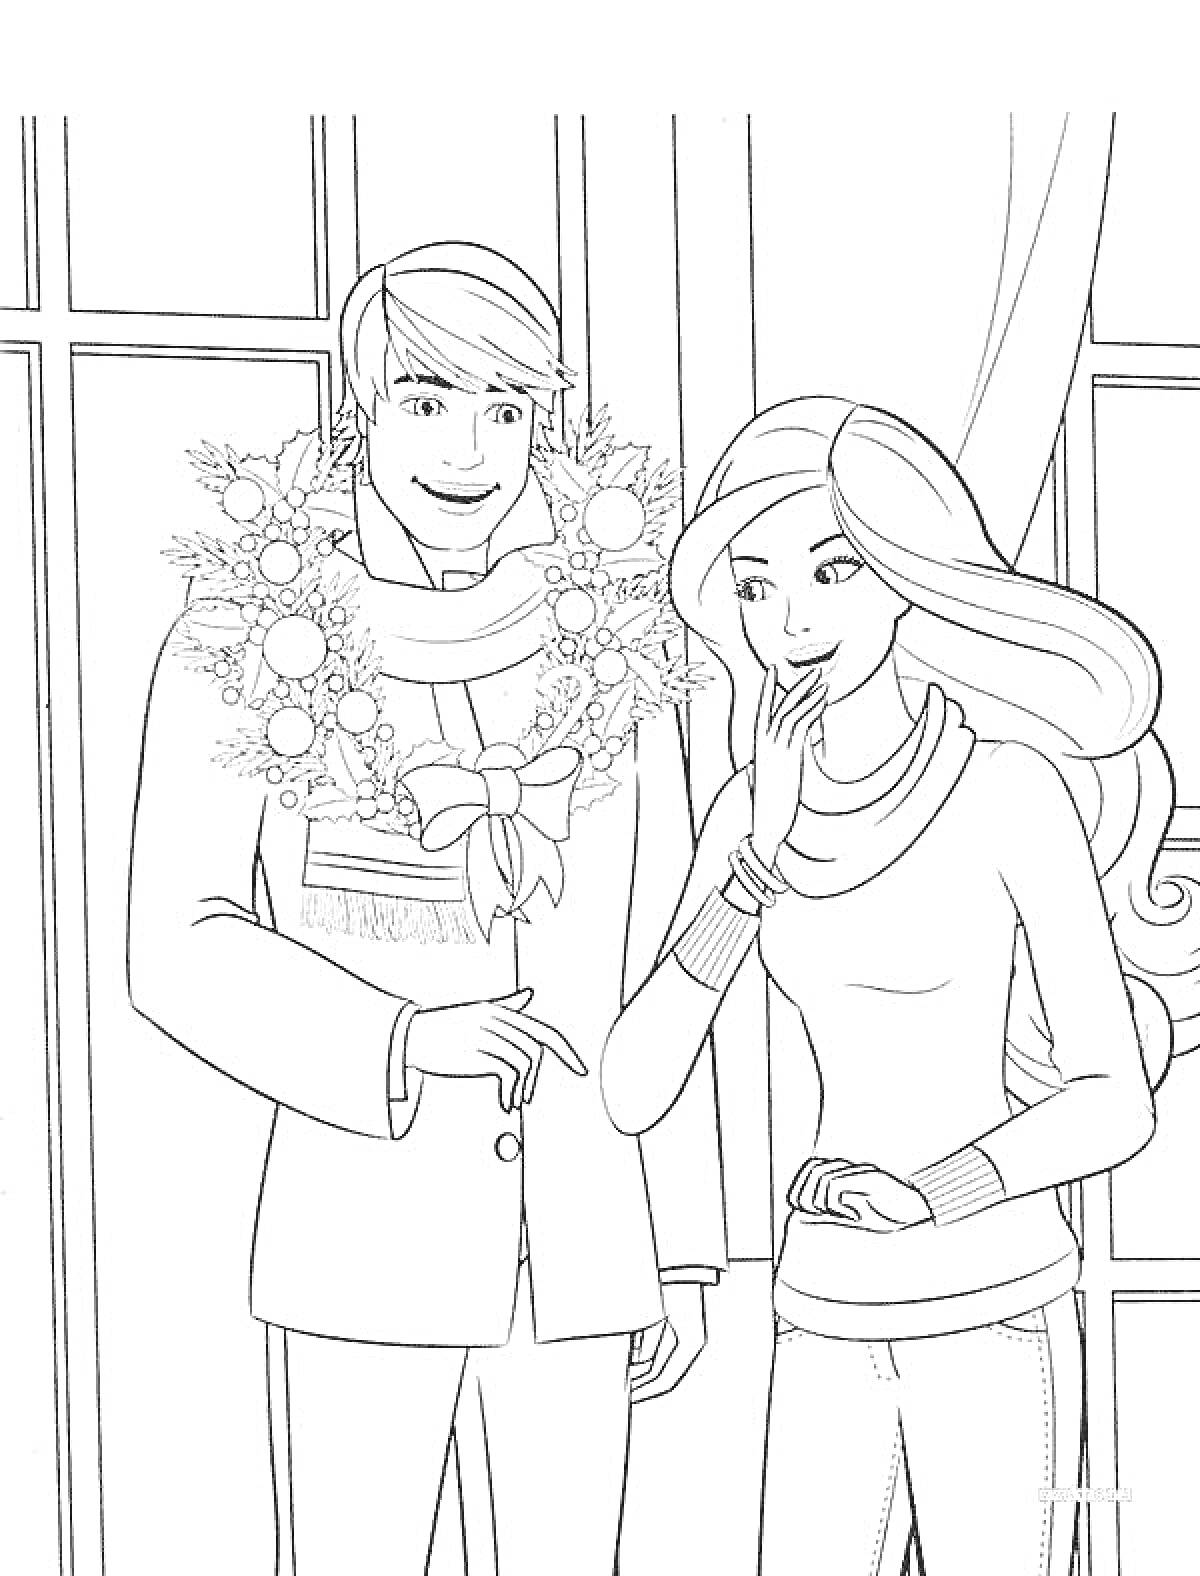  Кен и подруга у окна с венком, украшенным лентами и шарами